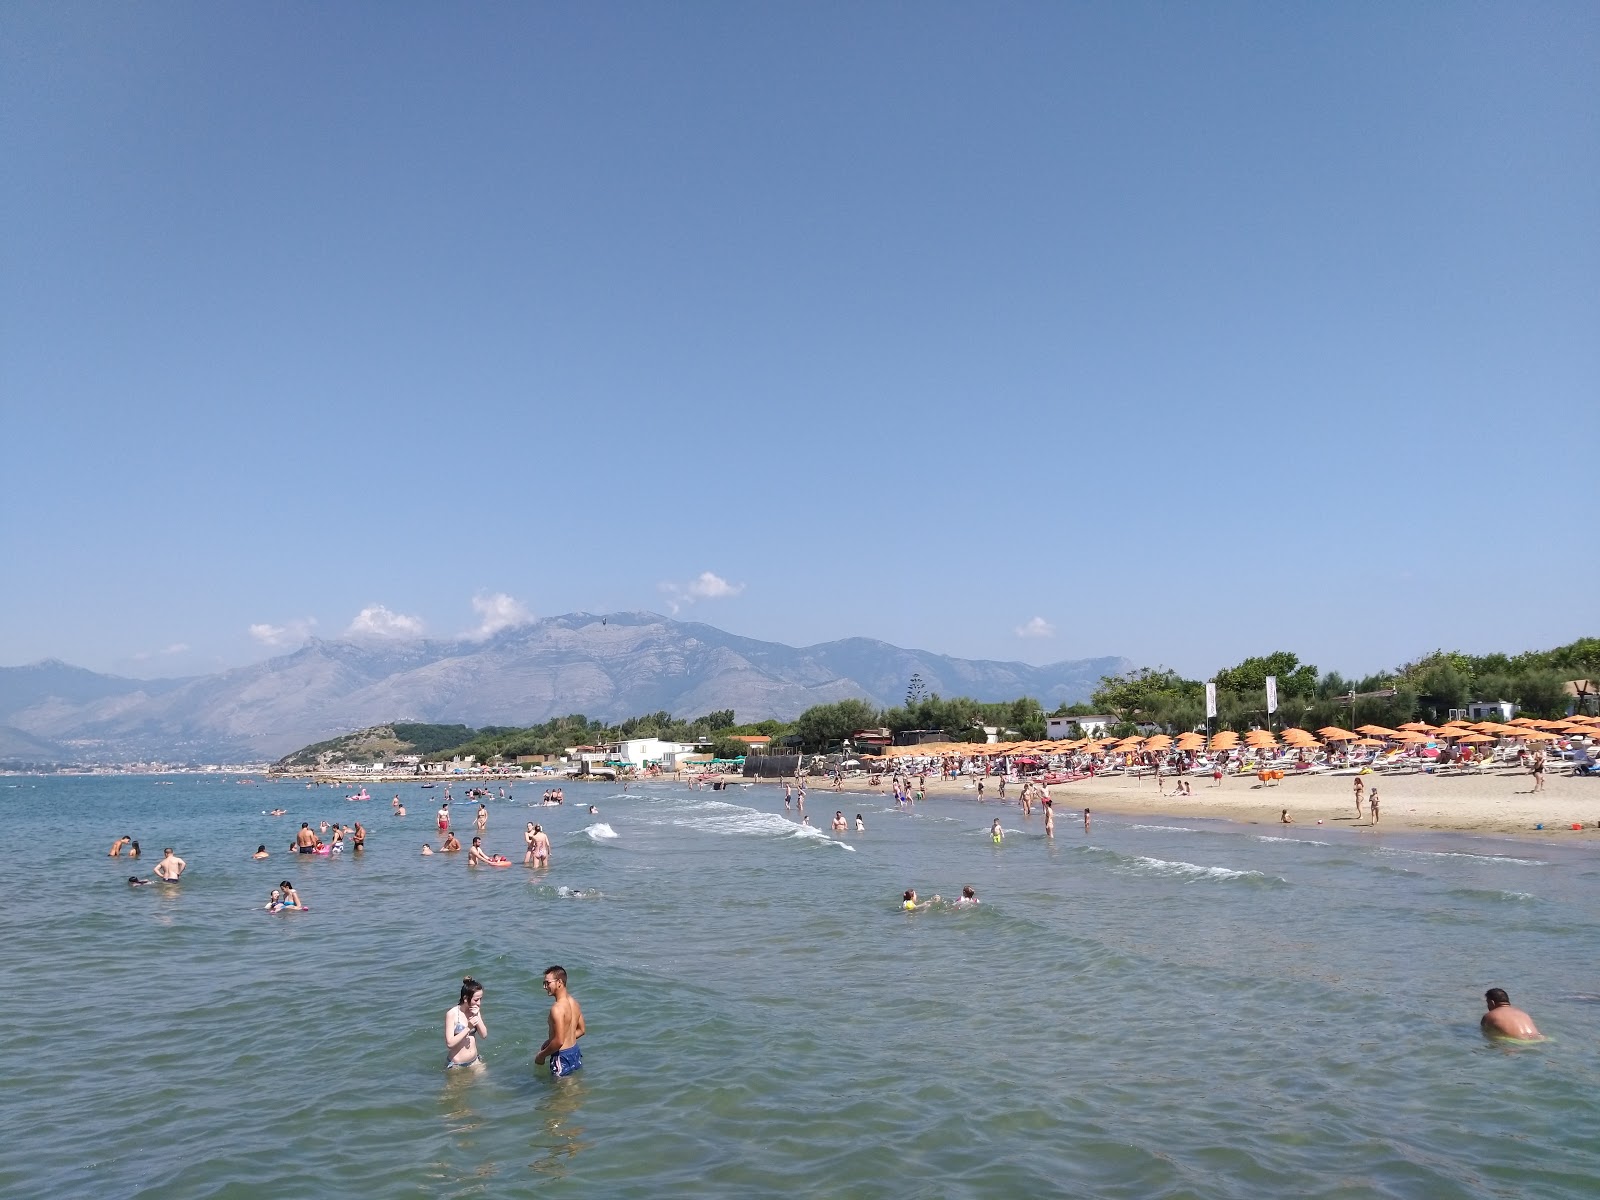 Fotografie cu Marina di Minturno beach cu o suprafață de apa albastra